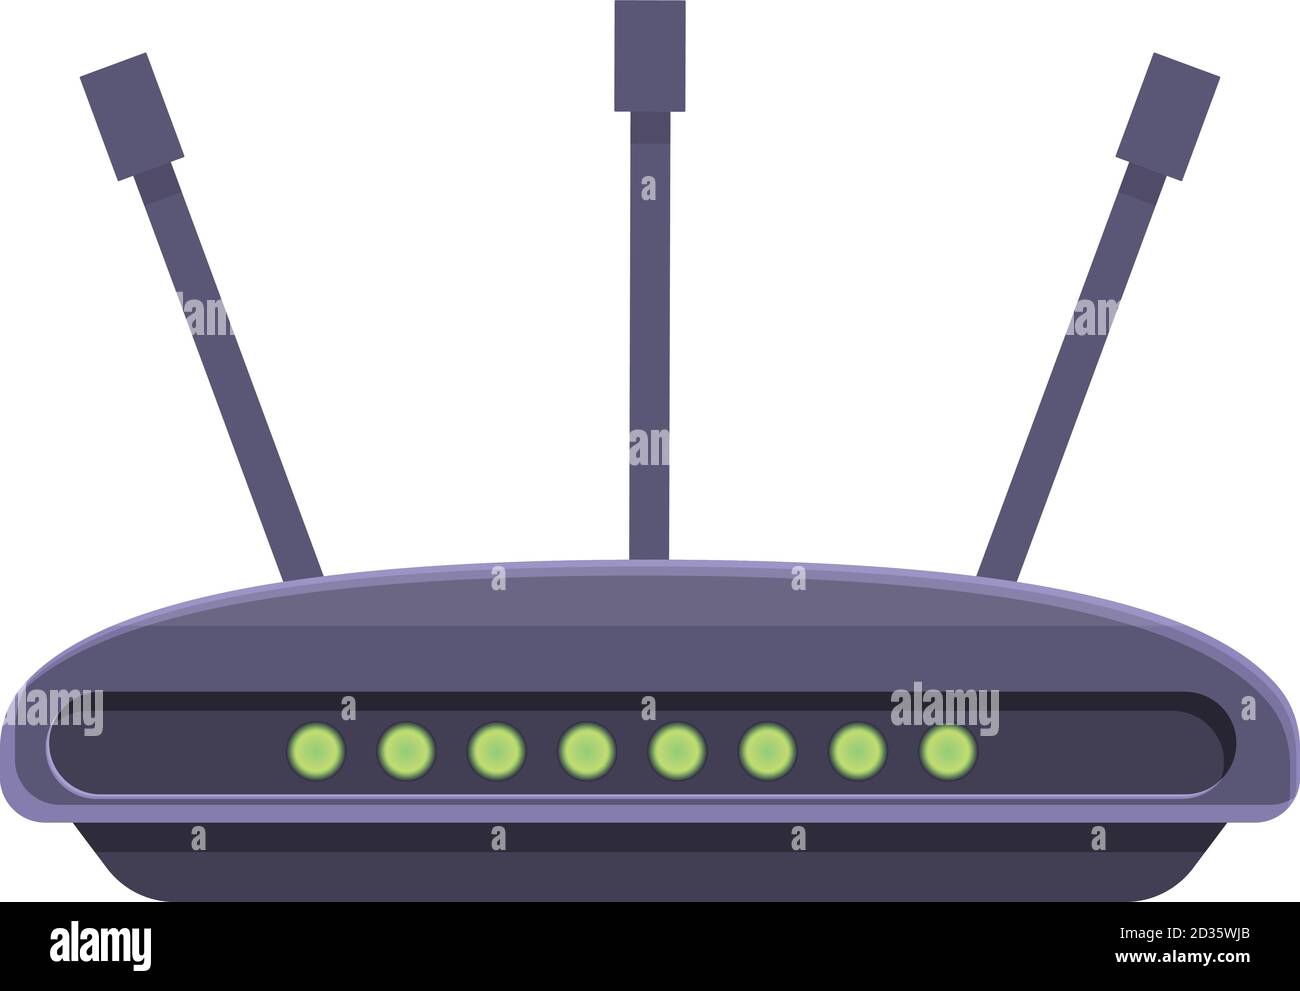 Icona della porta lan di rete del modem WiFi. Cartoon della rete